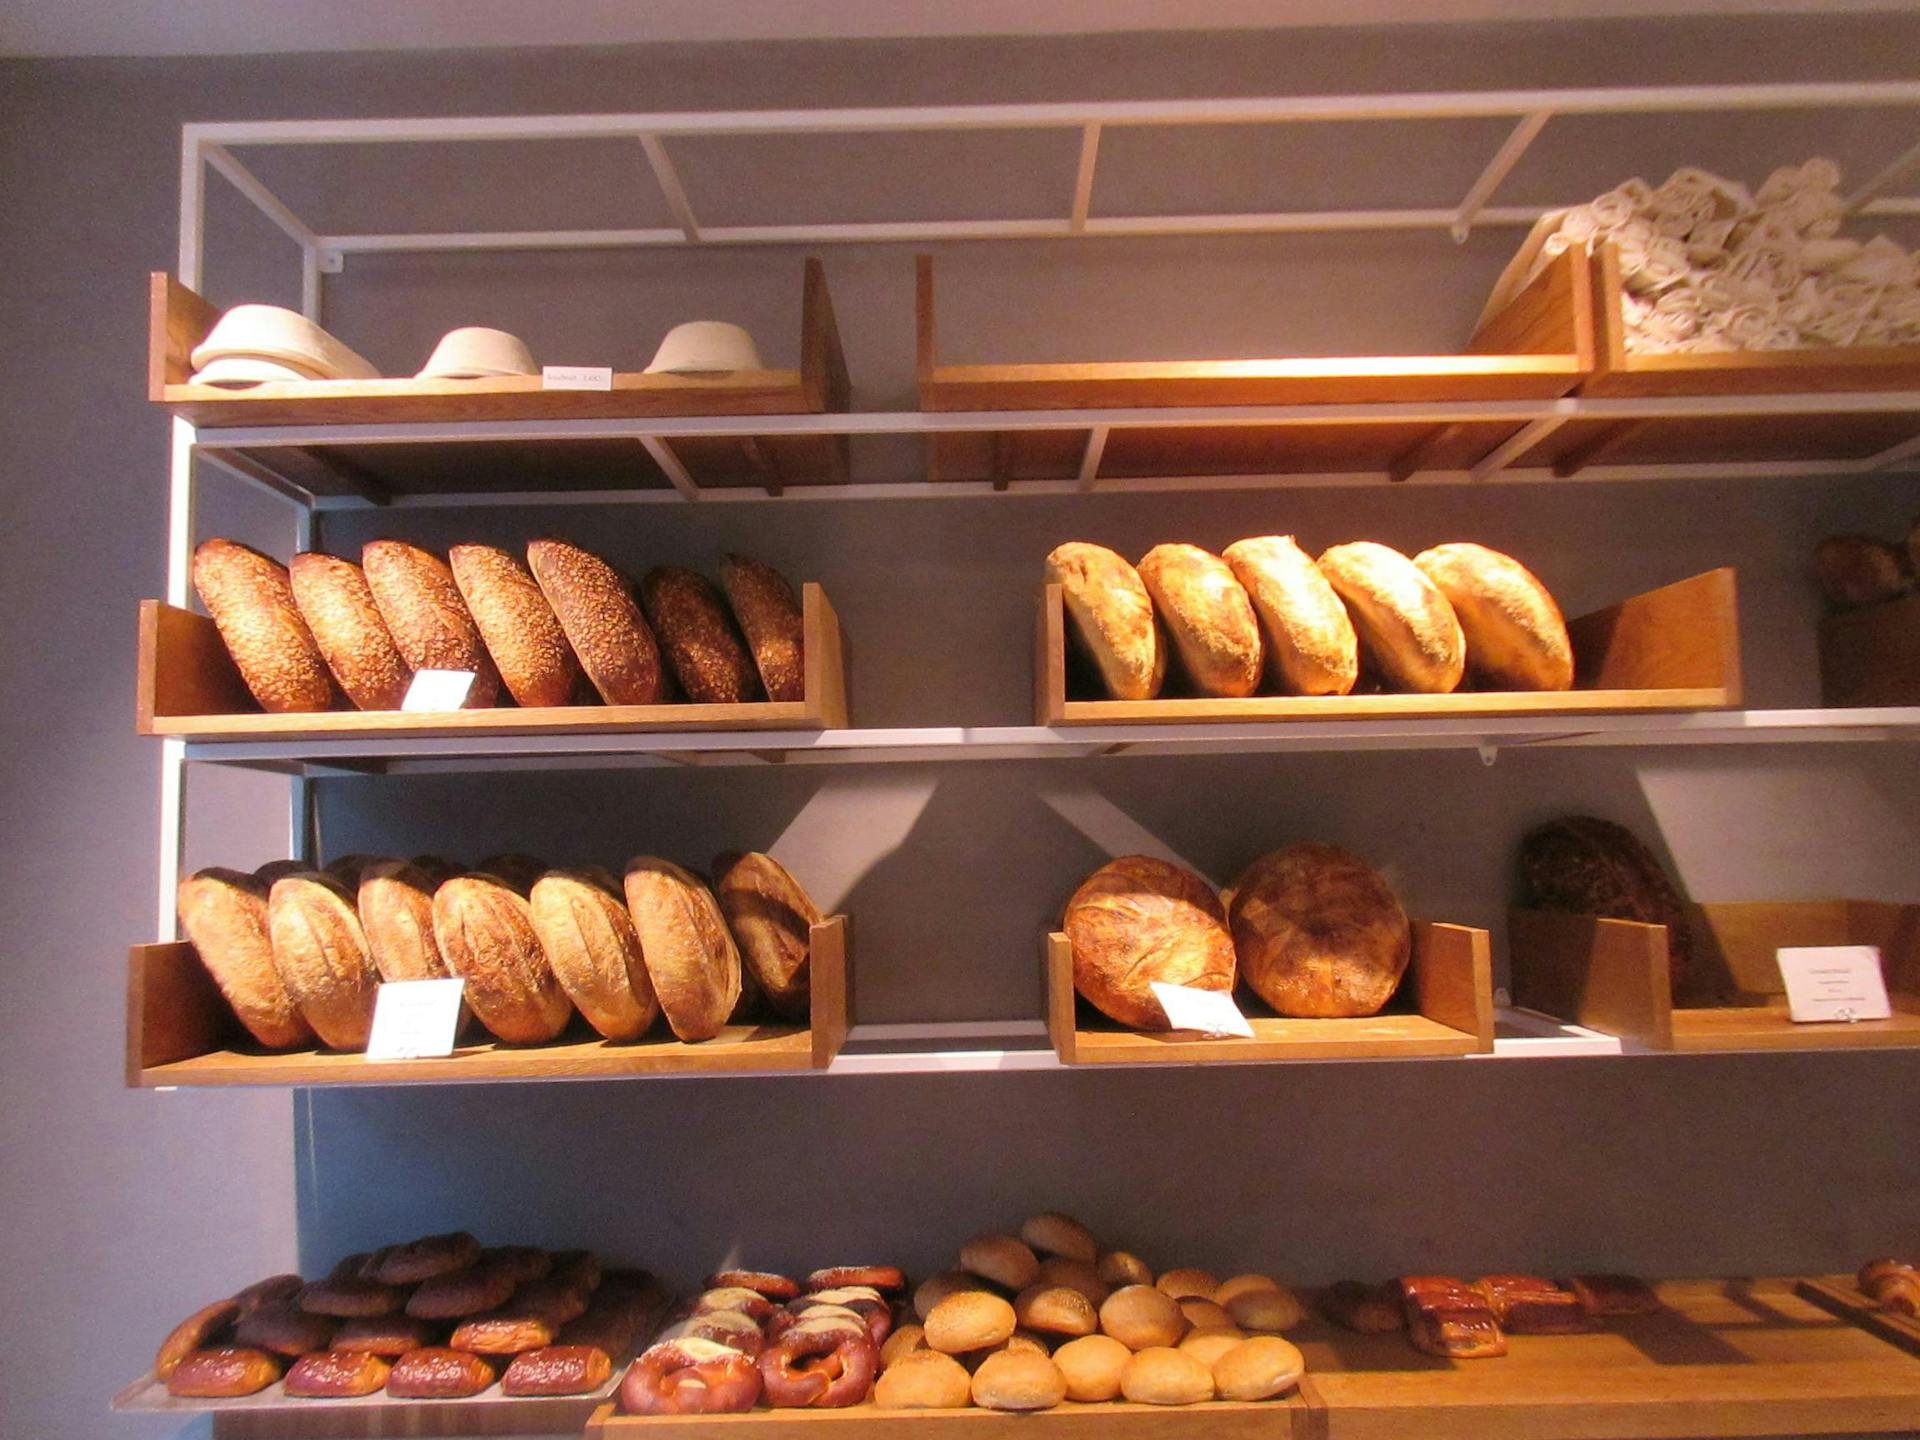 Bread inside a bakery in Iceland